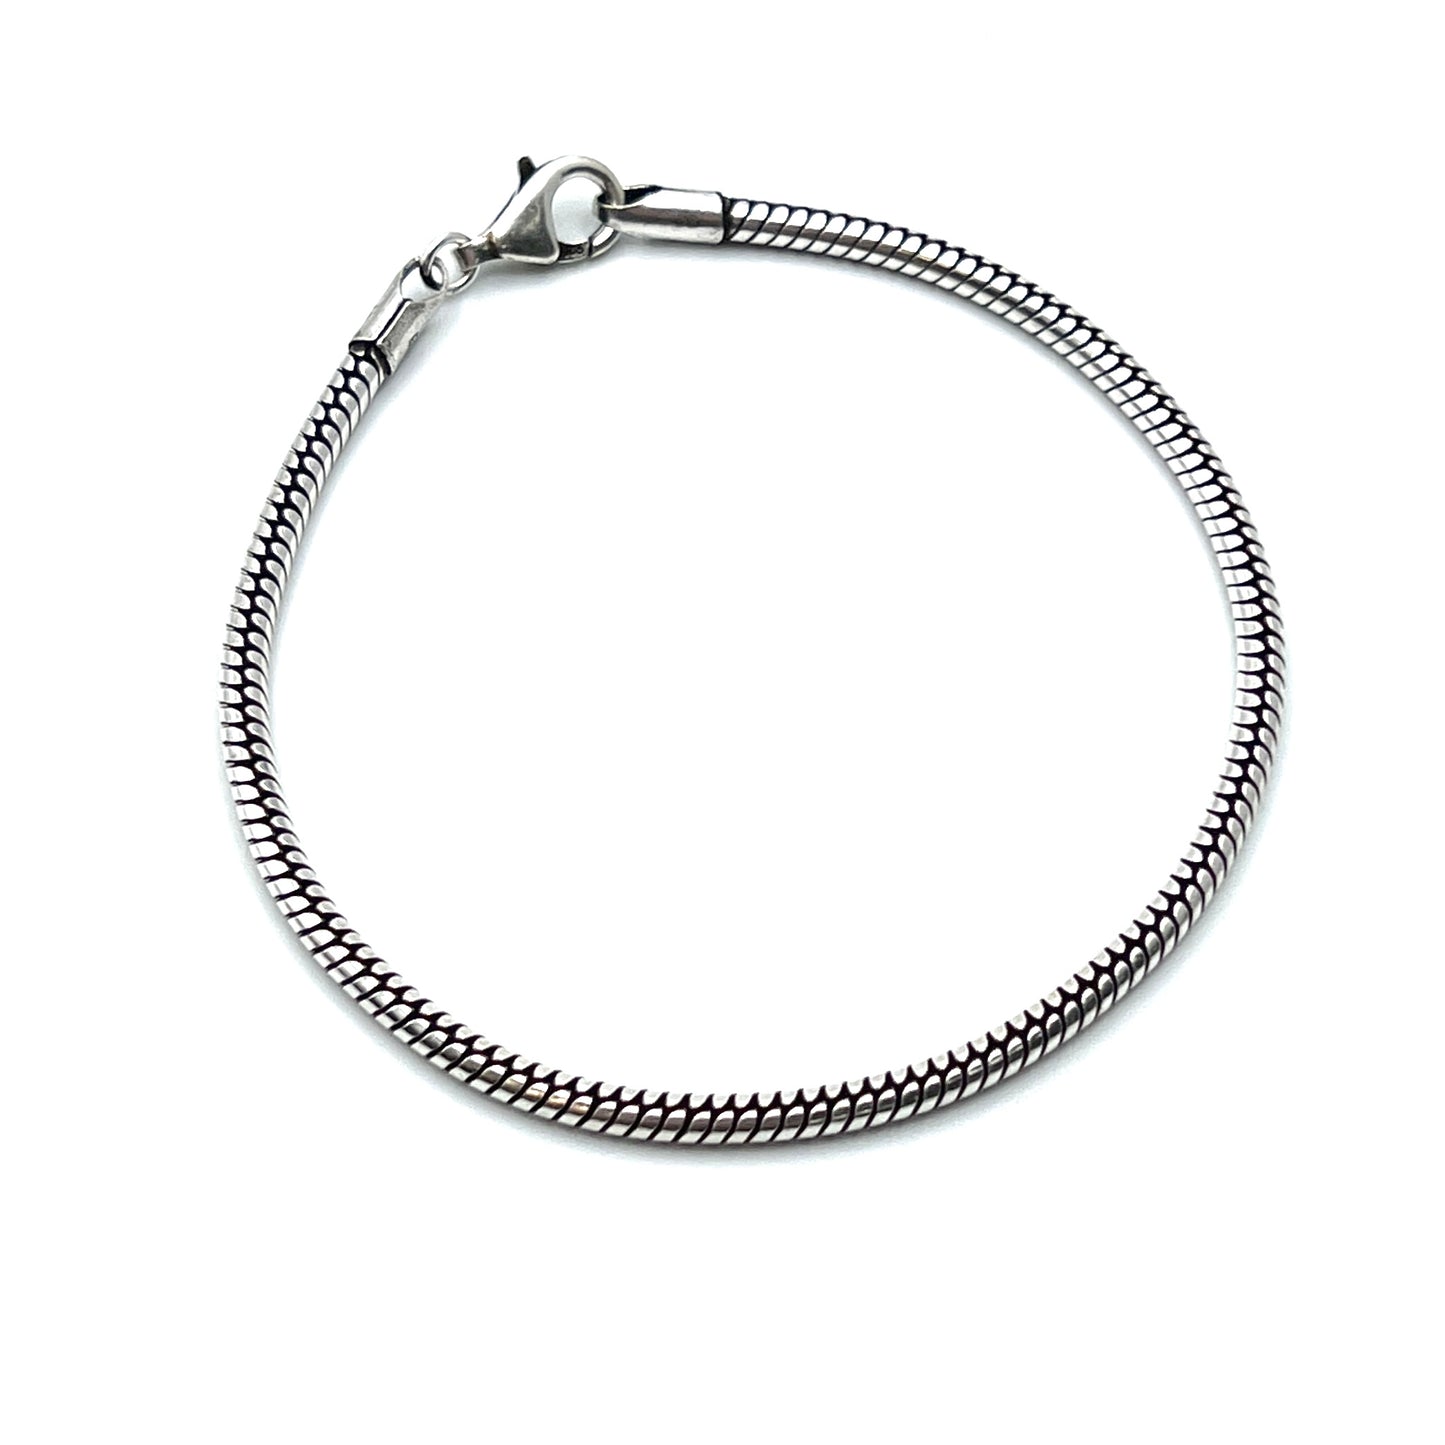 Oxidized Sterling Silver Snake Chain Bracelets